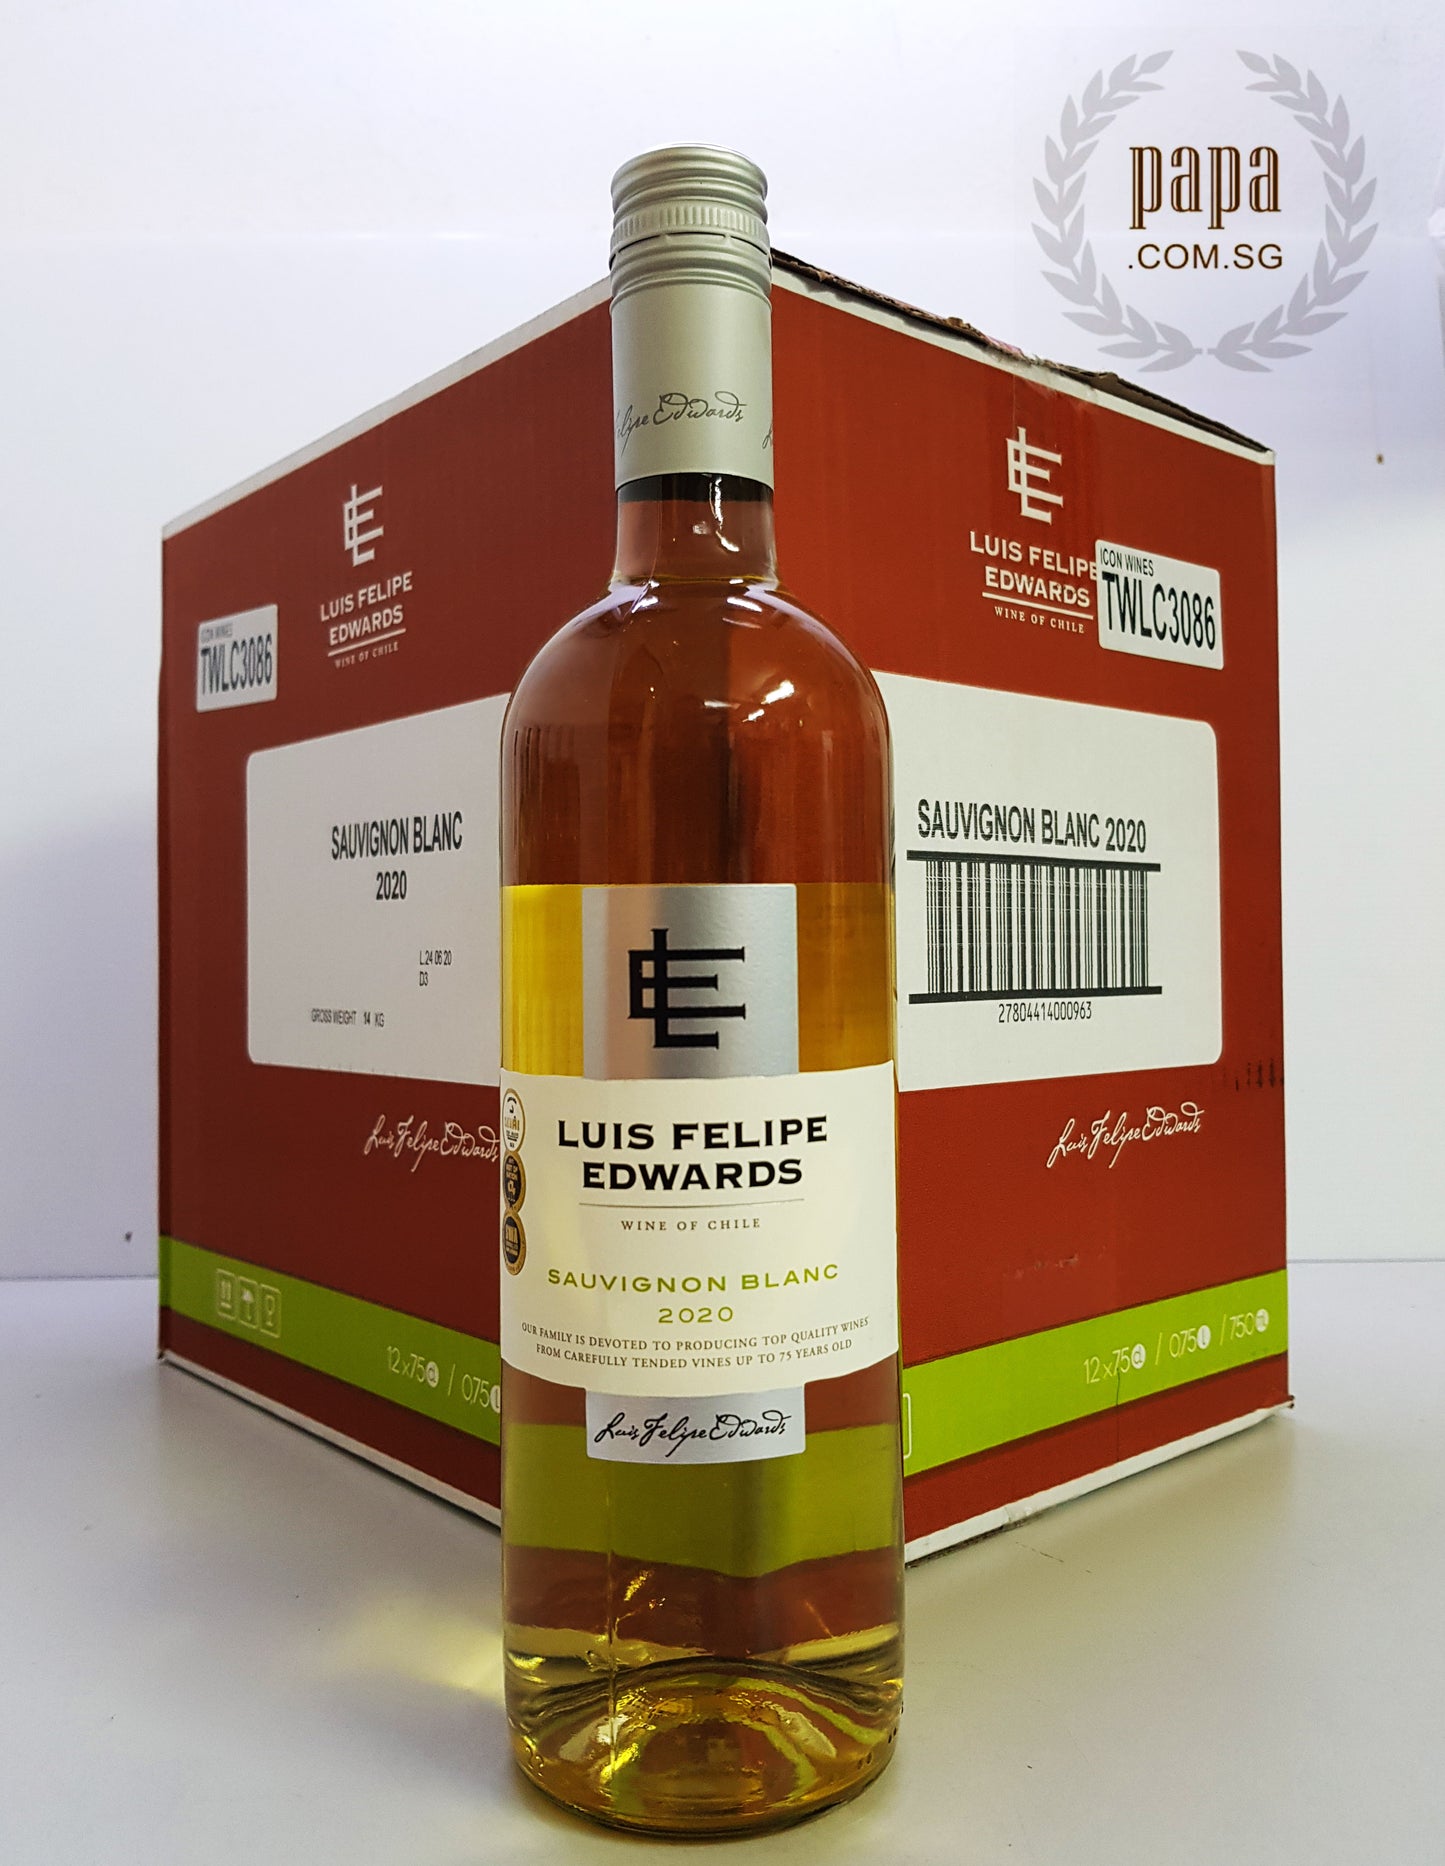 Papa's House Pour Series - Luis Felipe Edwards Classic Sauvignon Blanc 2020 (Sustainable Viticulture)